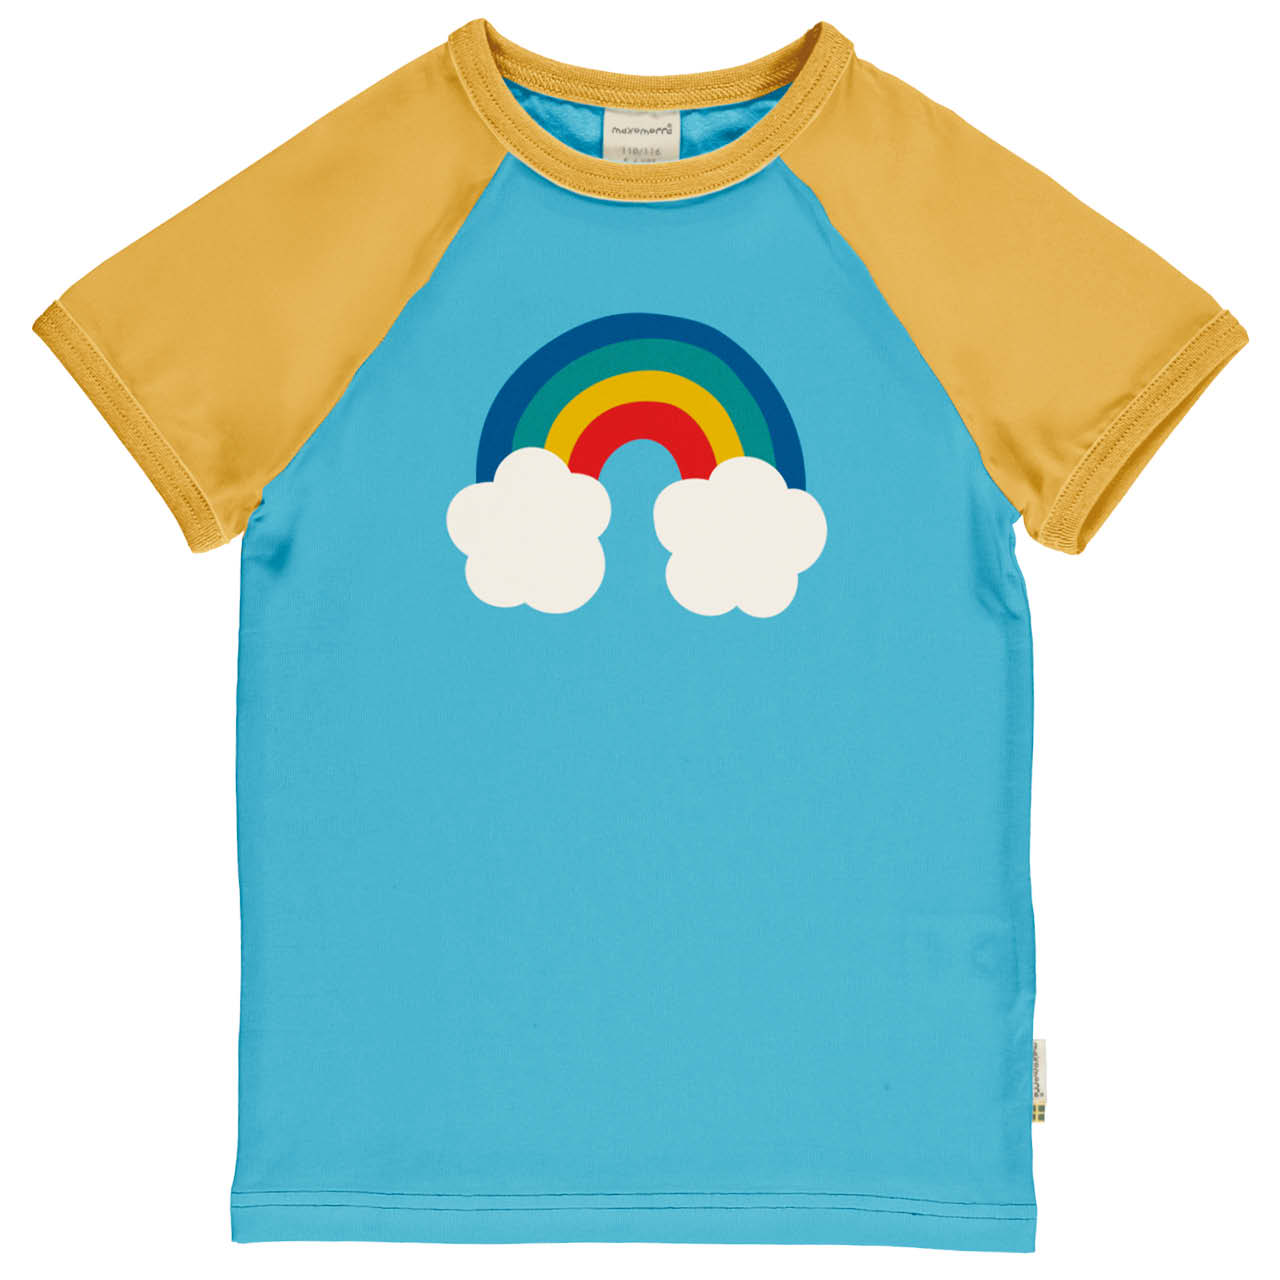 Weiches Raglan T-Shirt Regenbogen hellblau